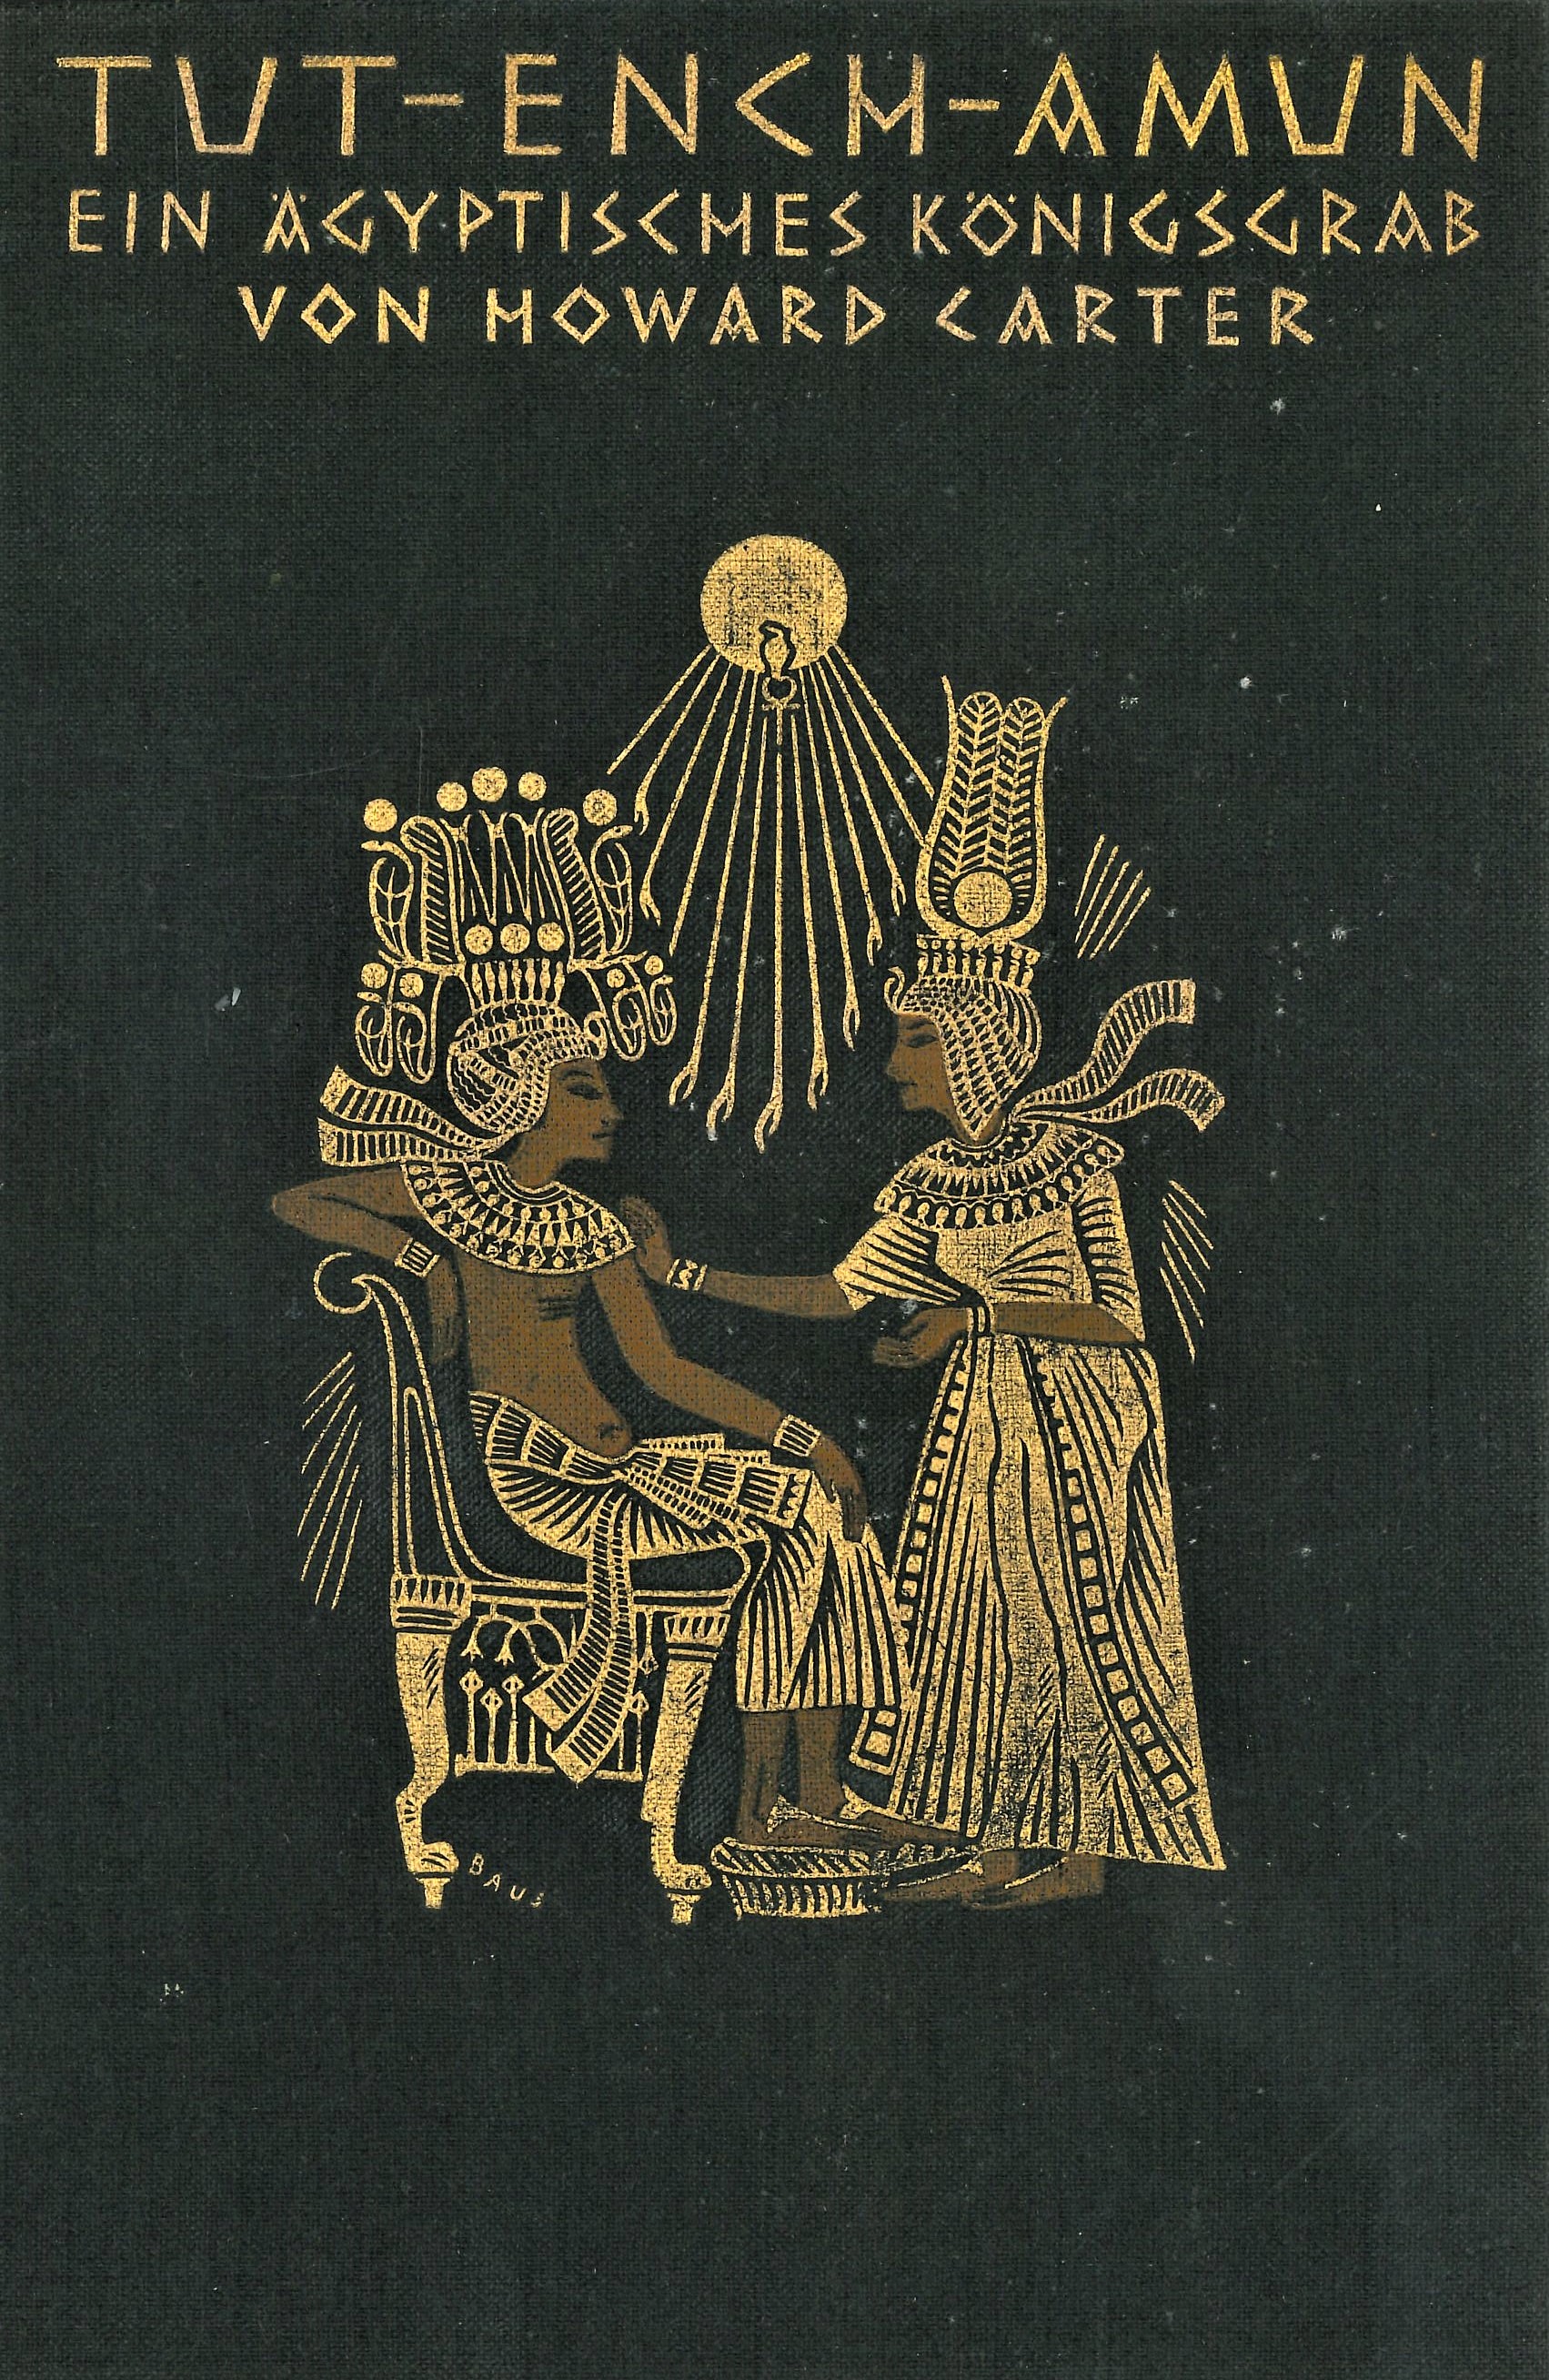 Howard Carter: Tut-ench-Amun. Bd. 1-3. Leipzig 1924-1934, Vorderdeckel Badische Landesbibliothek 66 A 223,1-3